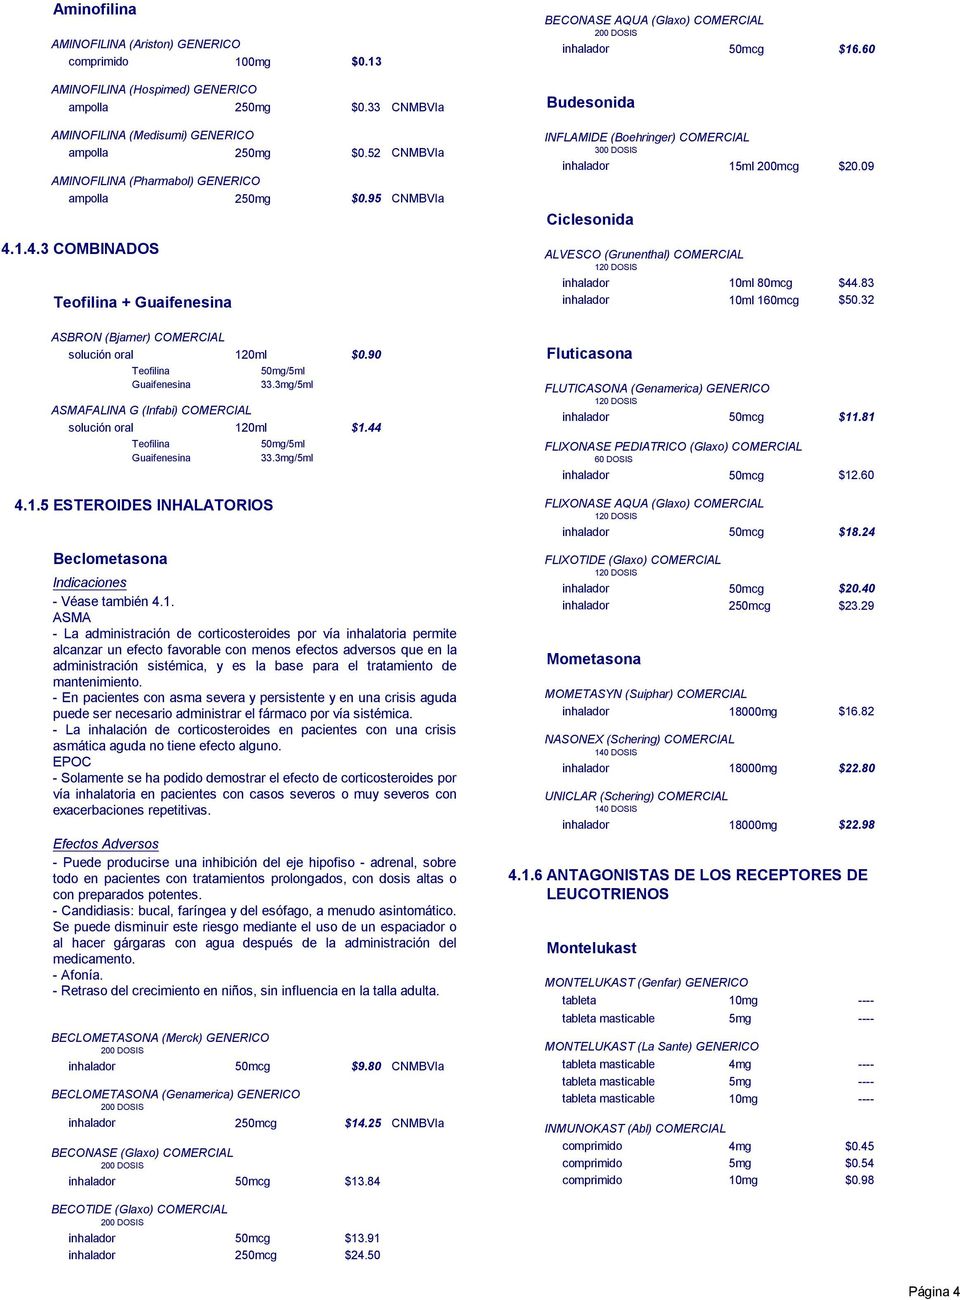 1.4.3 COMBINADOS Teofilina + ALVESCO (Grunenthal) COMERCIAL 10ml 80mcg 10ml 160mcg $44.83 $50.32 ASBRON (Bjarner) COMERCIAL Teofilina ASMAFALINA G (Infabi) COMERCIAL Teofilina 50mg/5ml 33.